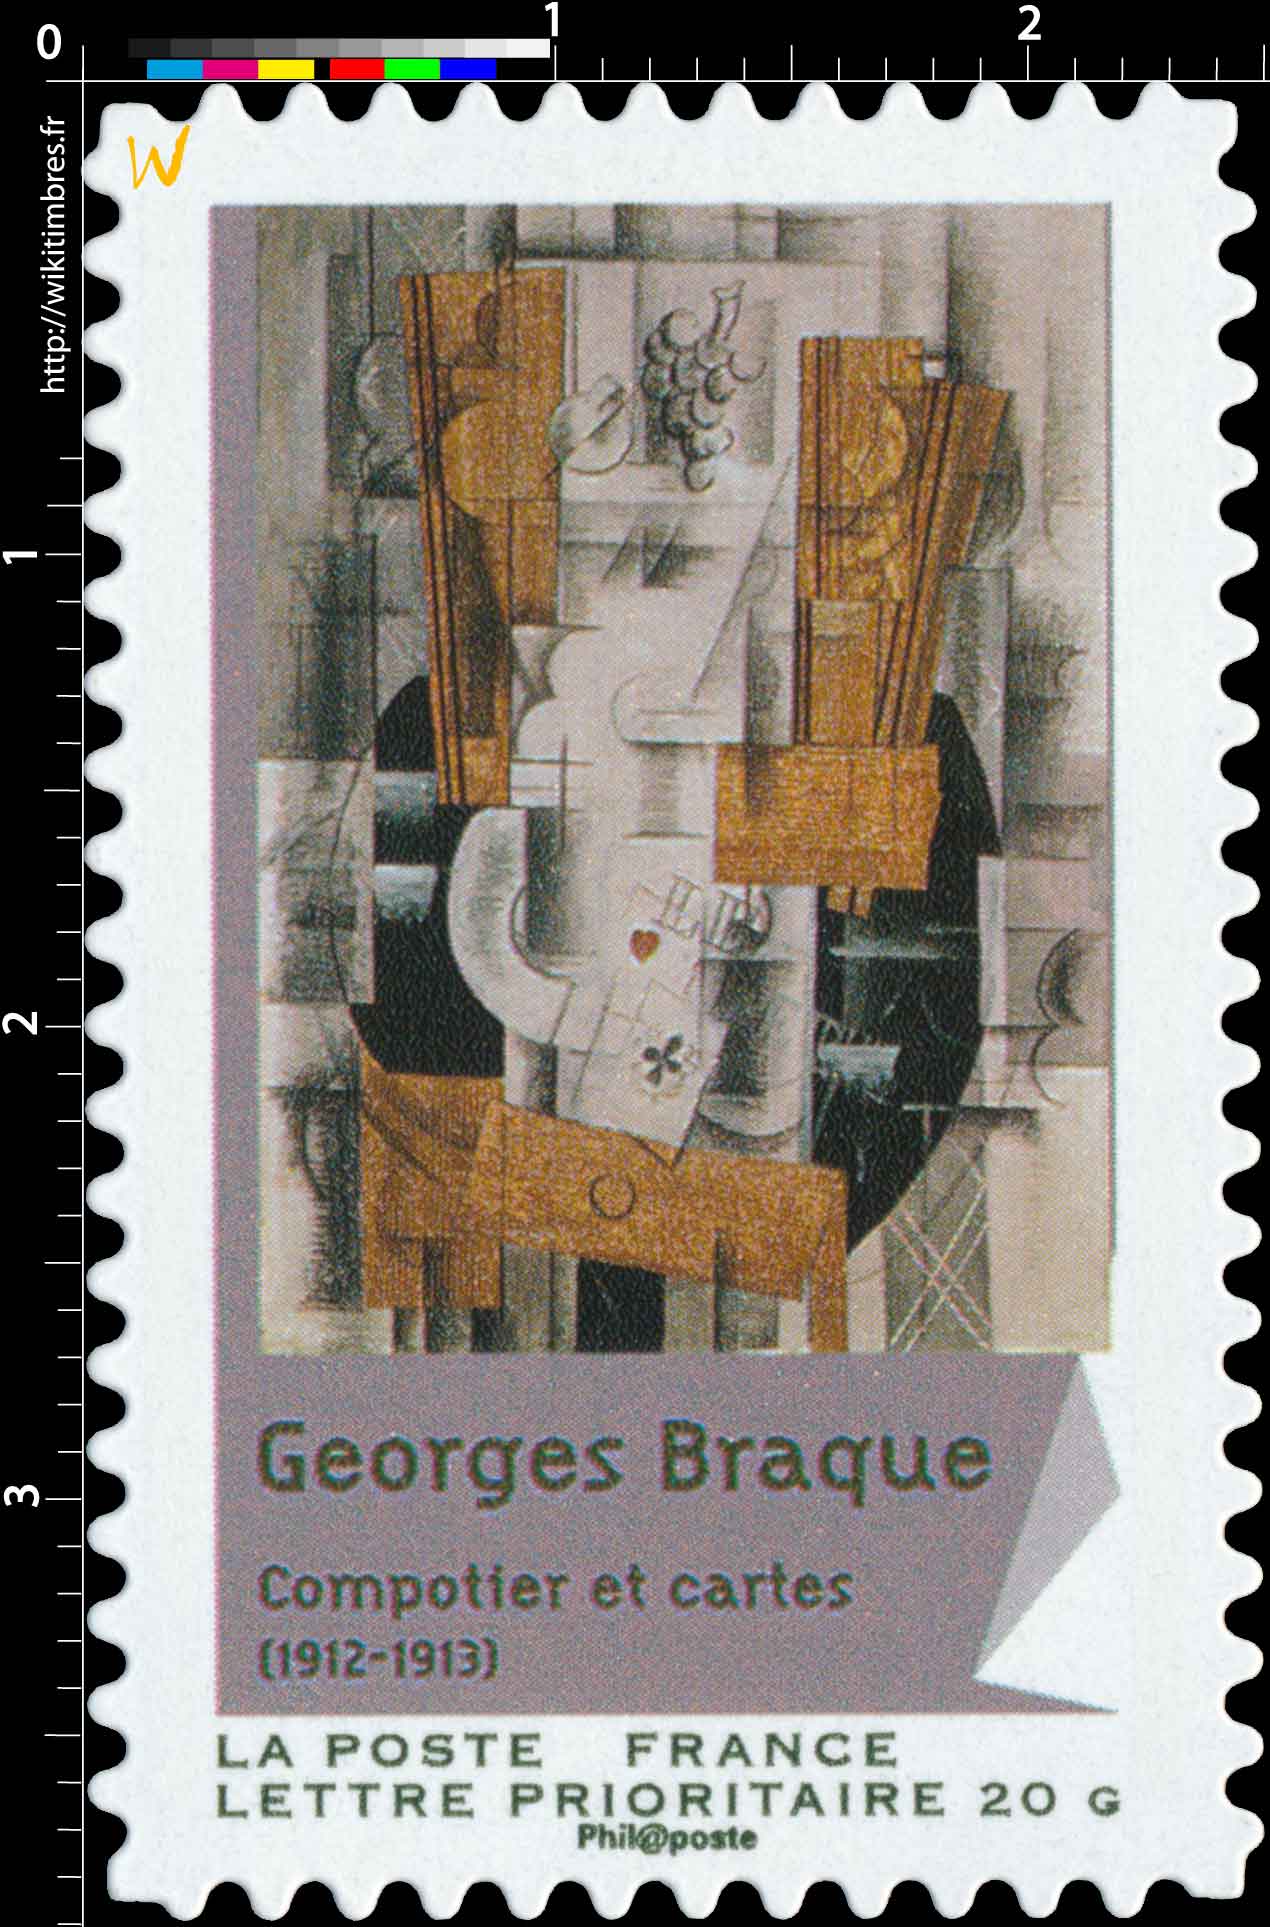 Georges Braque Compotier et cartes (1912-1913)